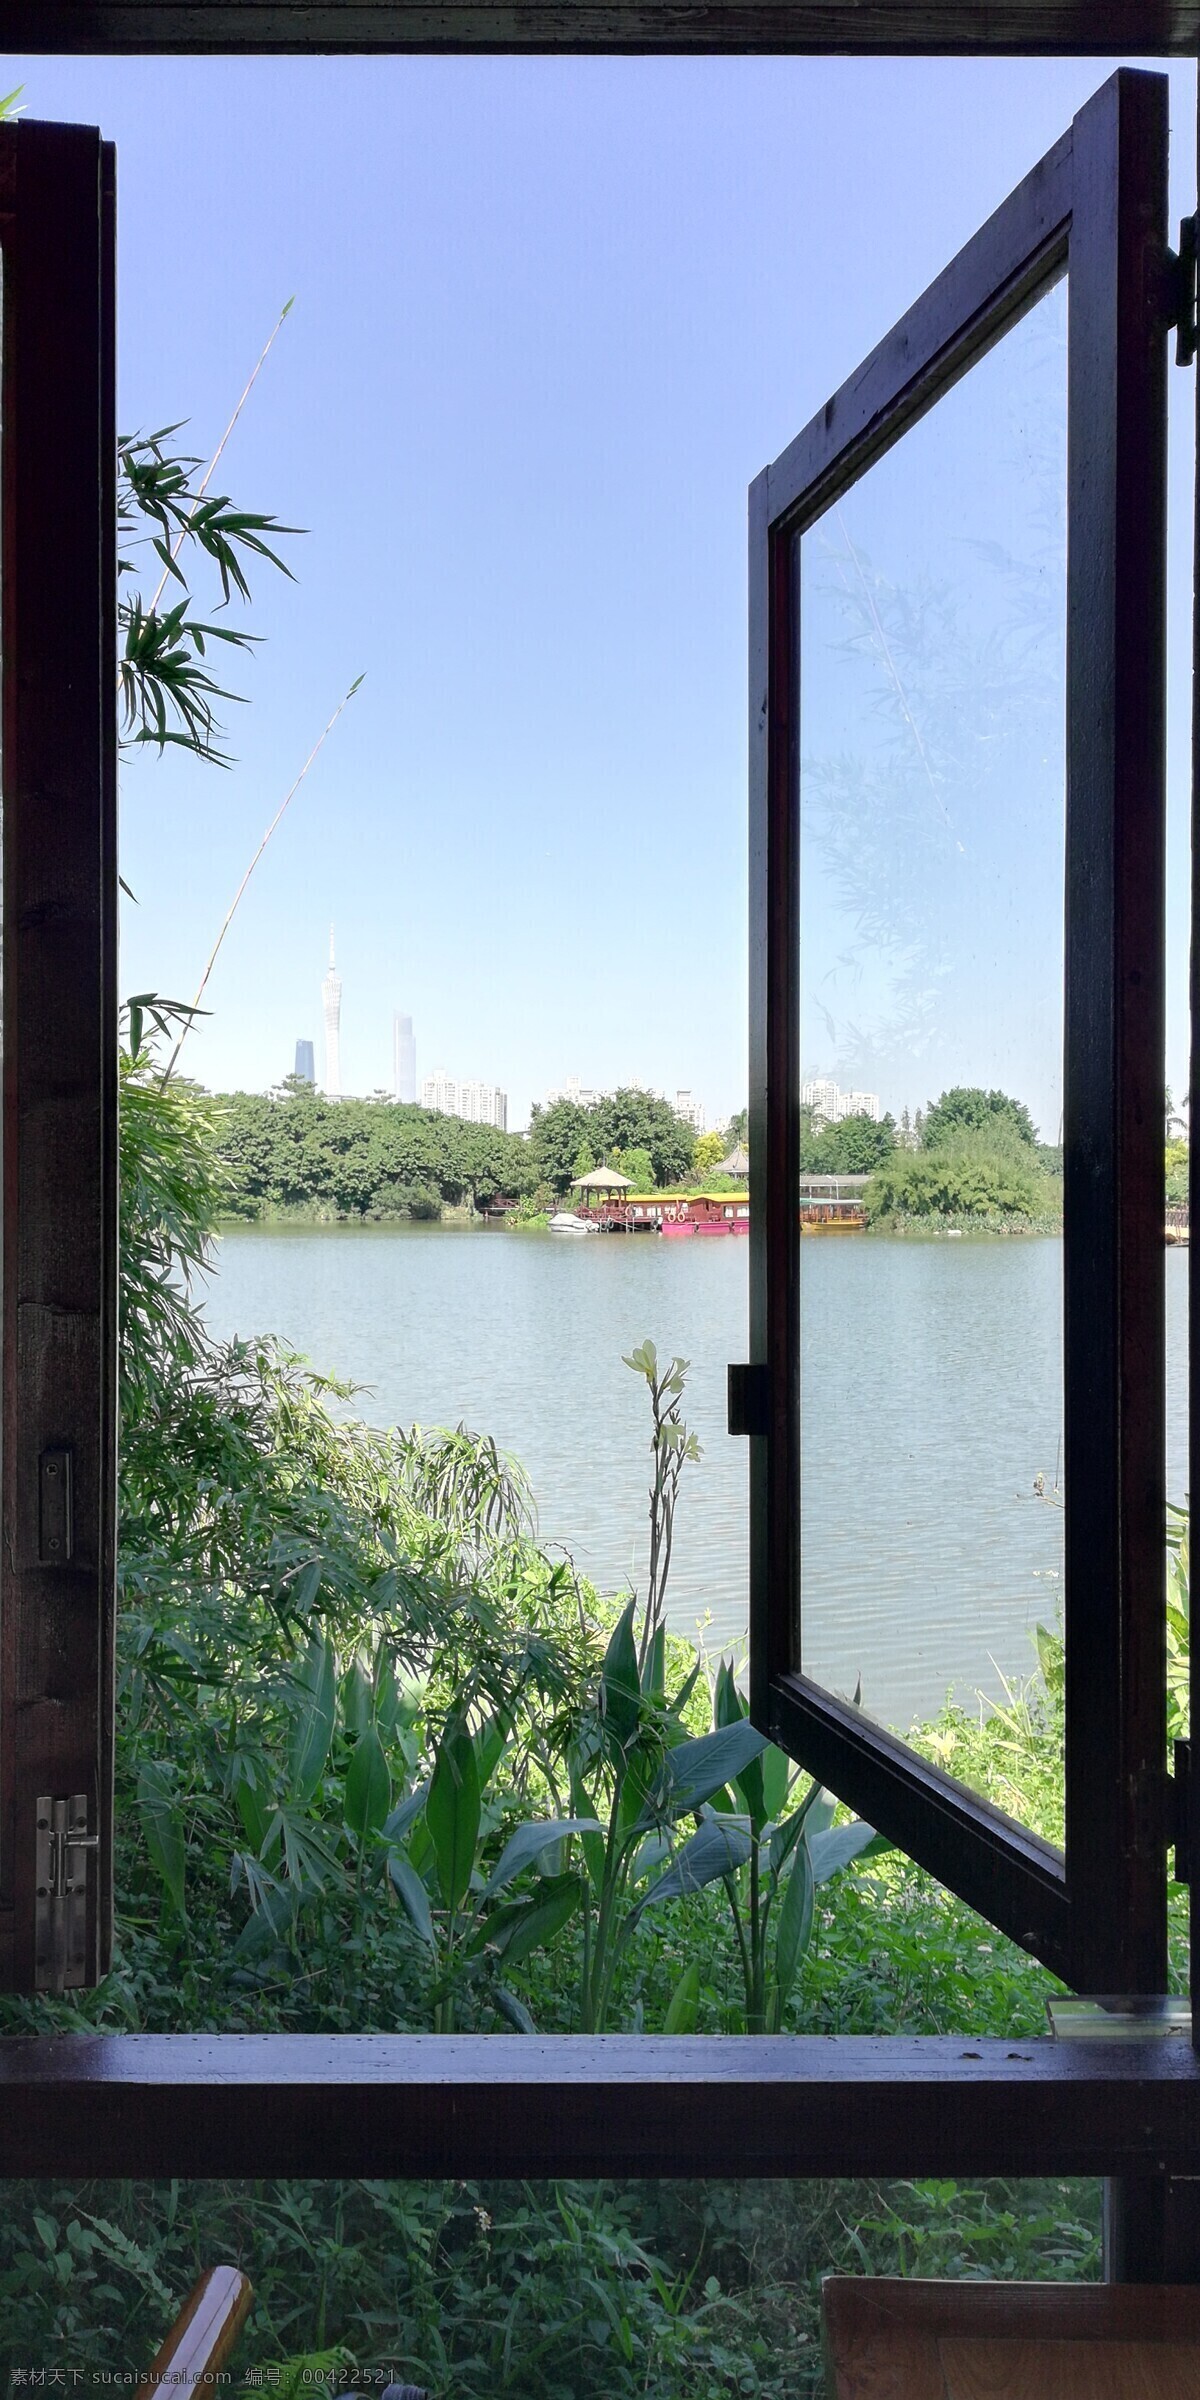 窗外湖泊风光 窗户 窗子 窗外 窗棂 湖泊 江河 树木 蓝天 自然景观 山水风景